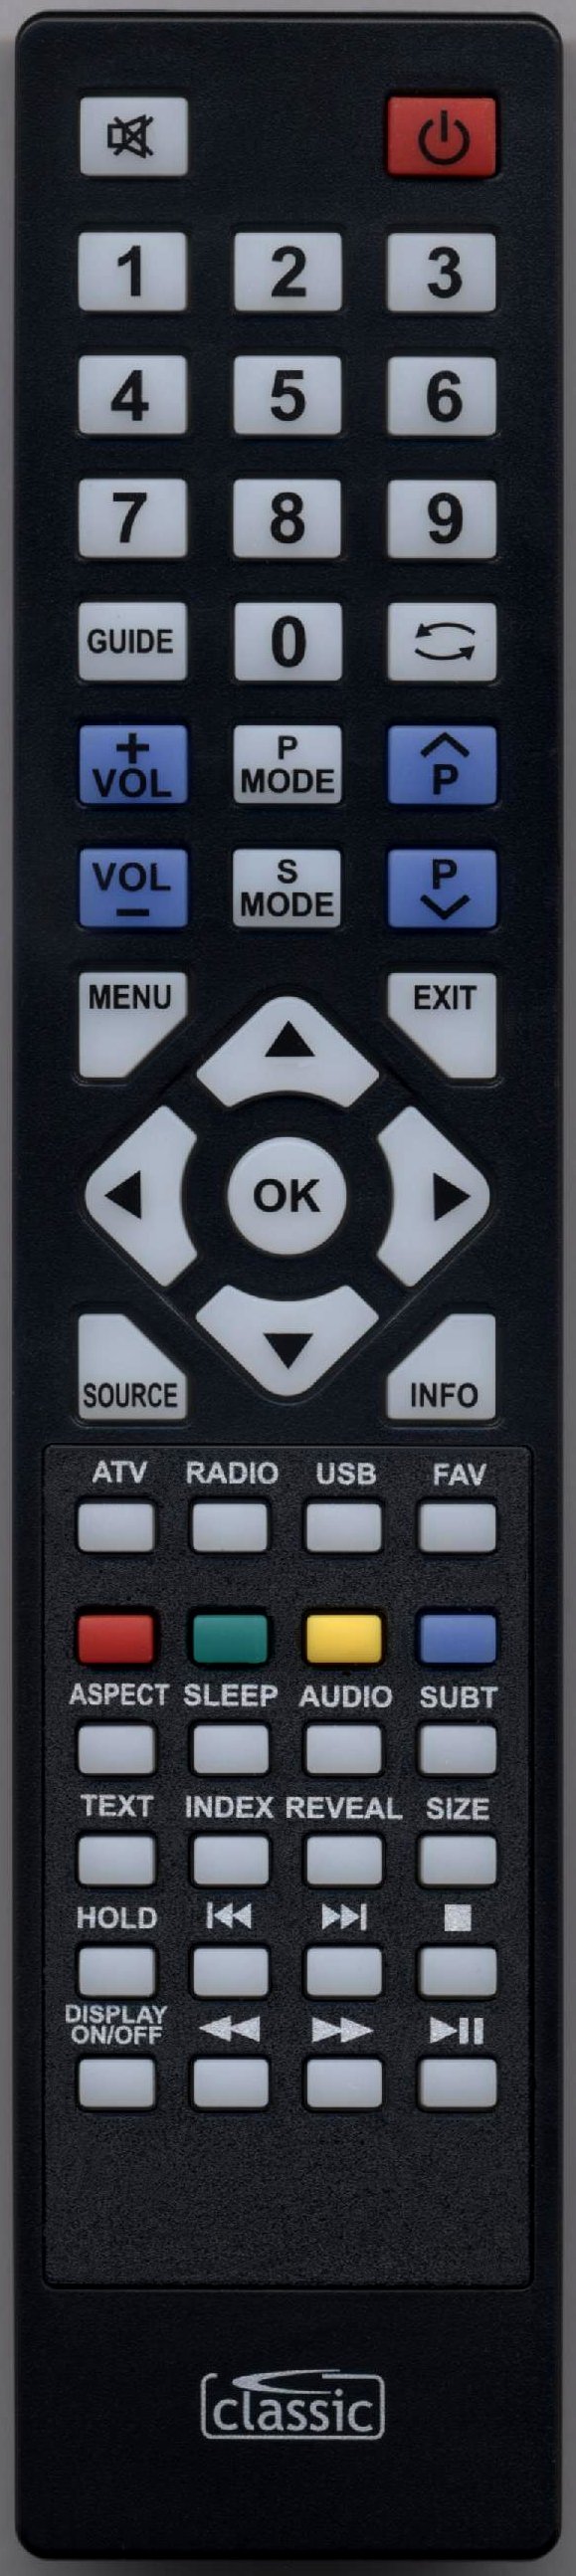 Emotion X3269 Remote Control